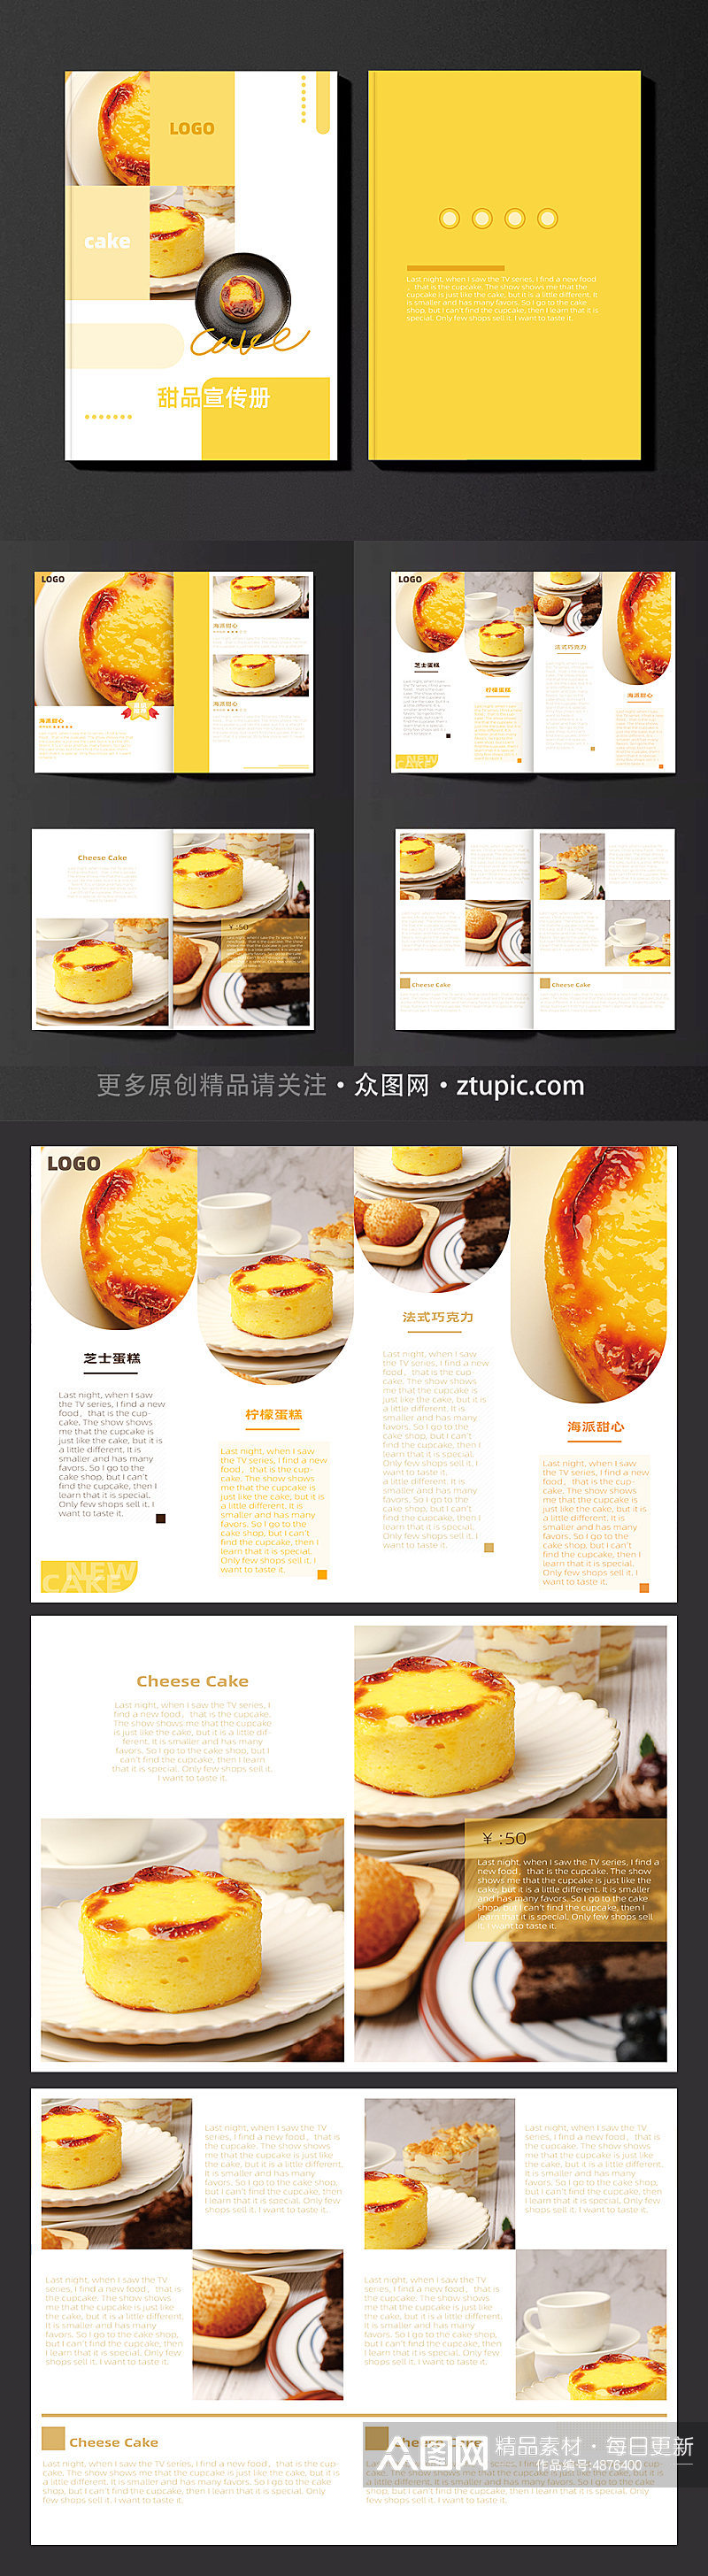 暖色调甜品蛋糕下午茶美食宣传册画册素材